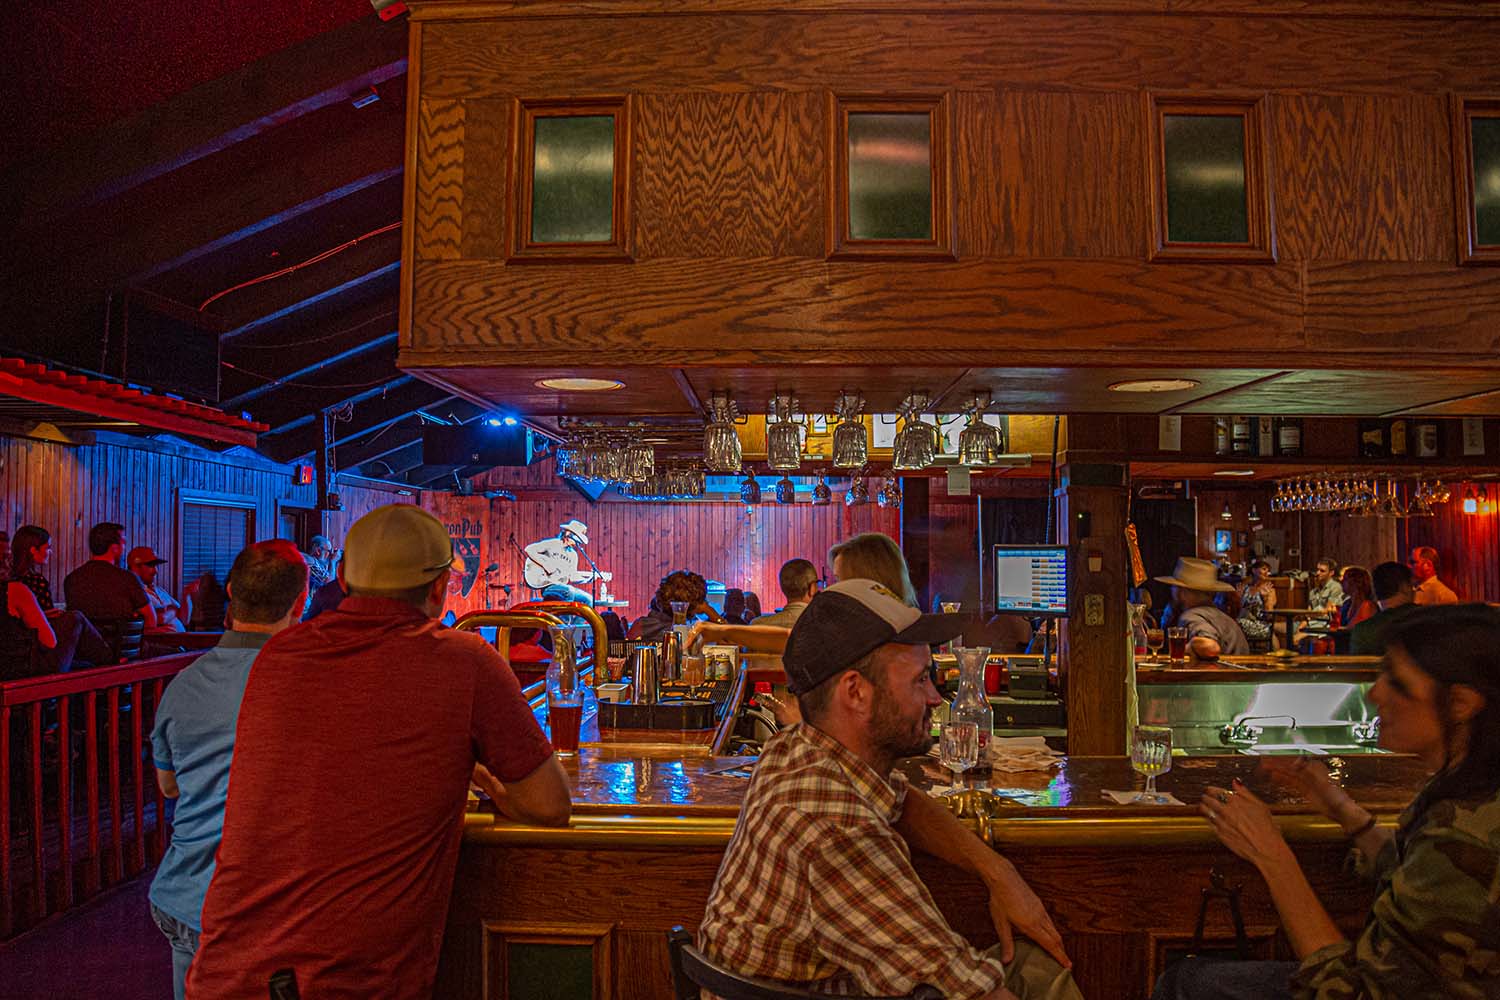 The Saxon Pub - Iconic Austin Music Venue on South Lamar since 1990